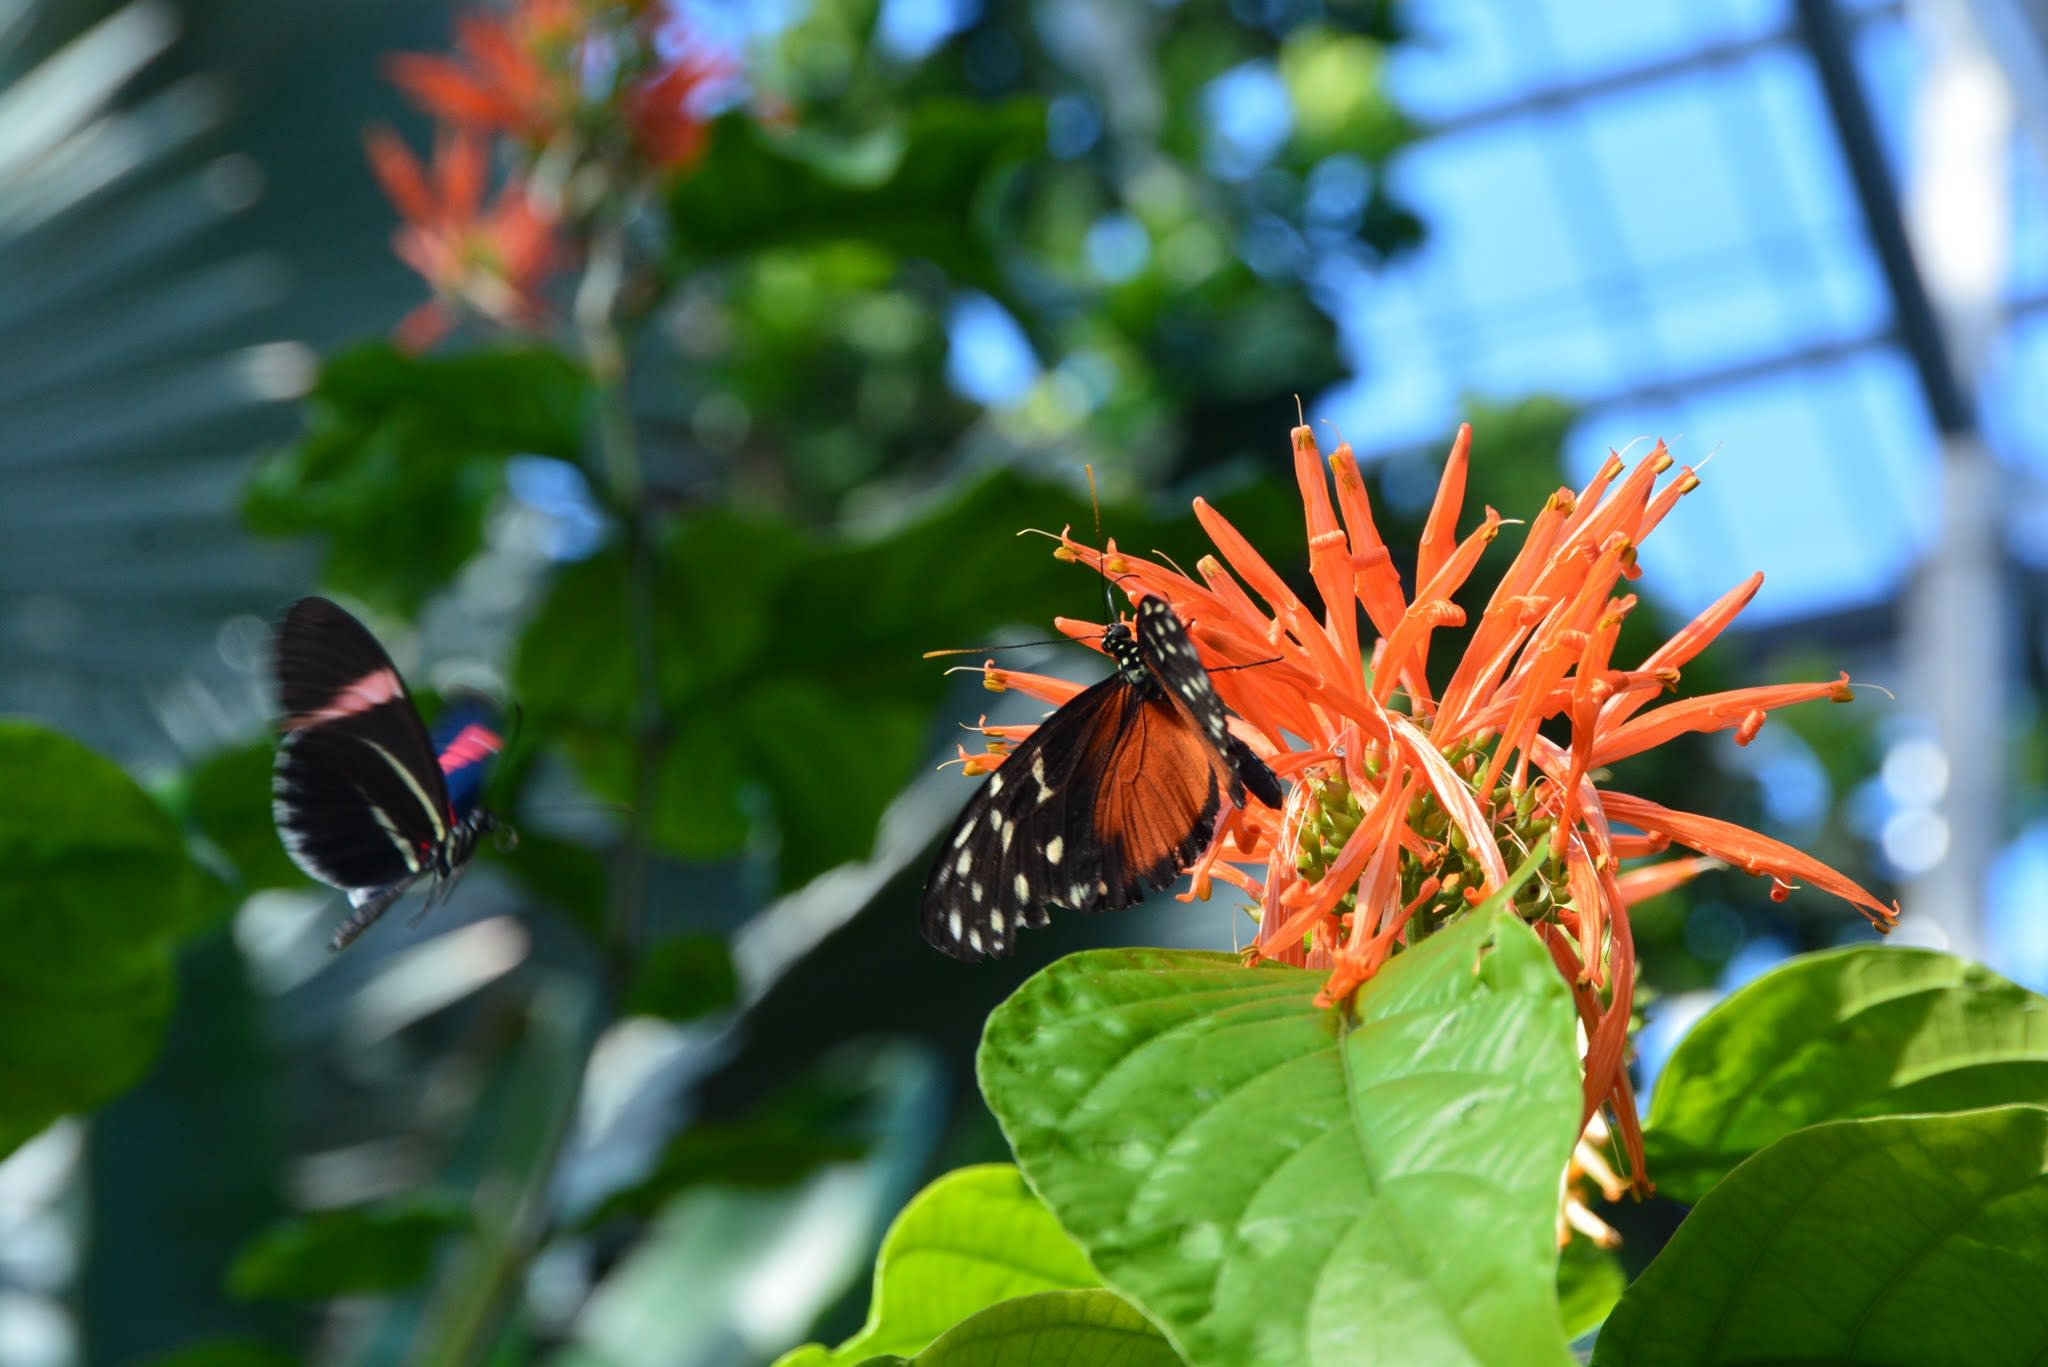  Meijer Gardens Butterflies are Blooming